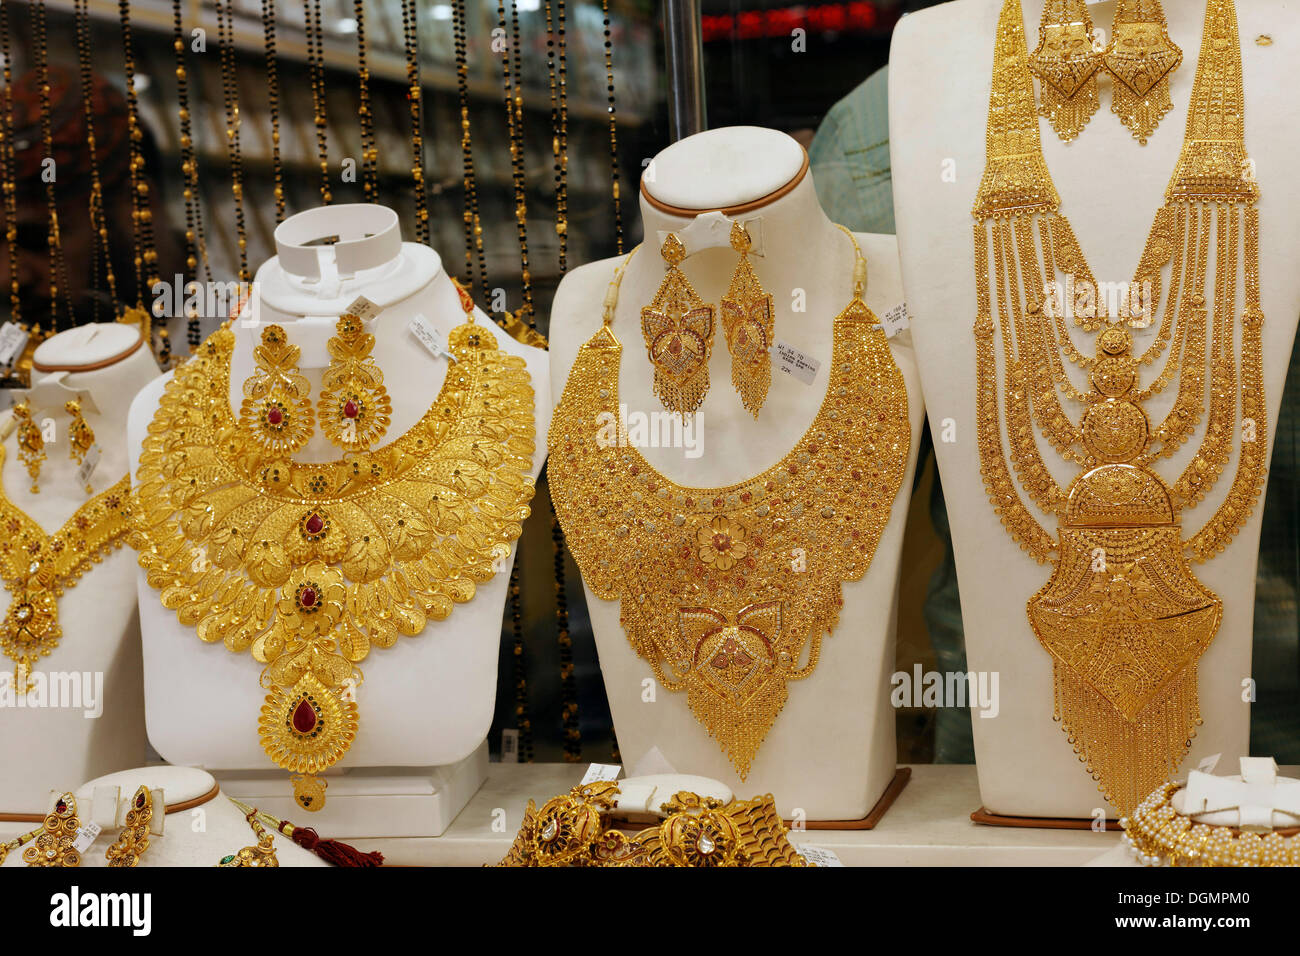 Lush gold necklaces, Indian style, based upon ancient models, Gold Souk, Deira, Dubai, United Arab Emirates, Middle East, Asia Stock Photo